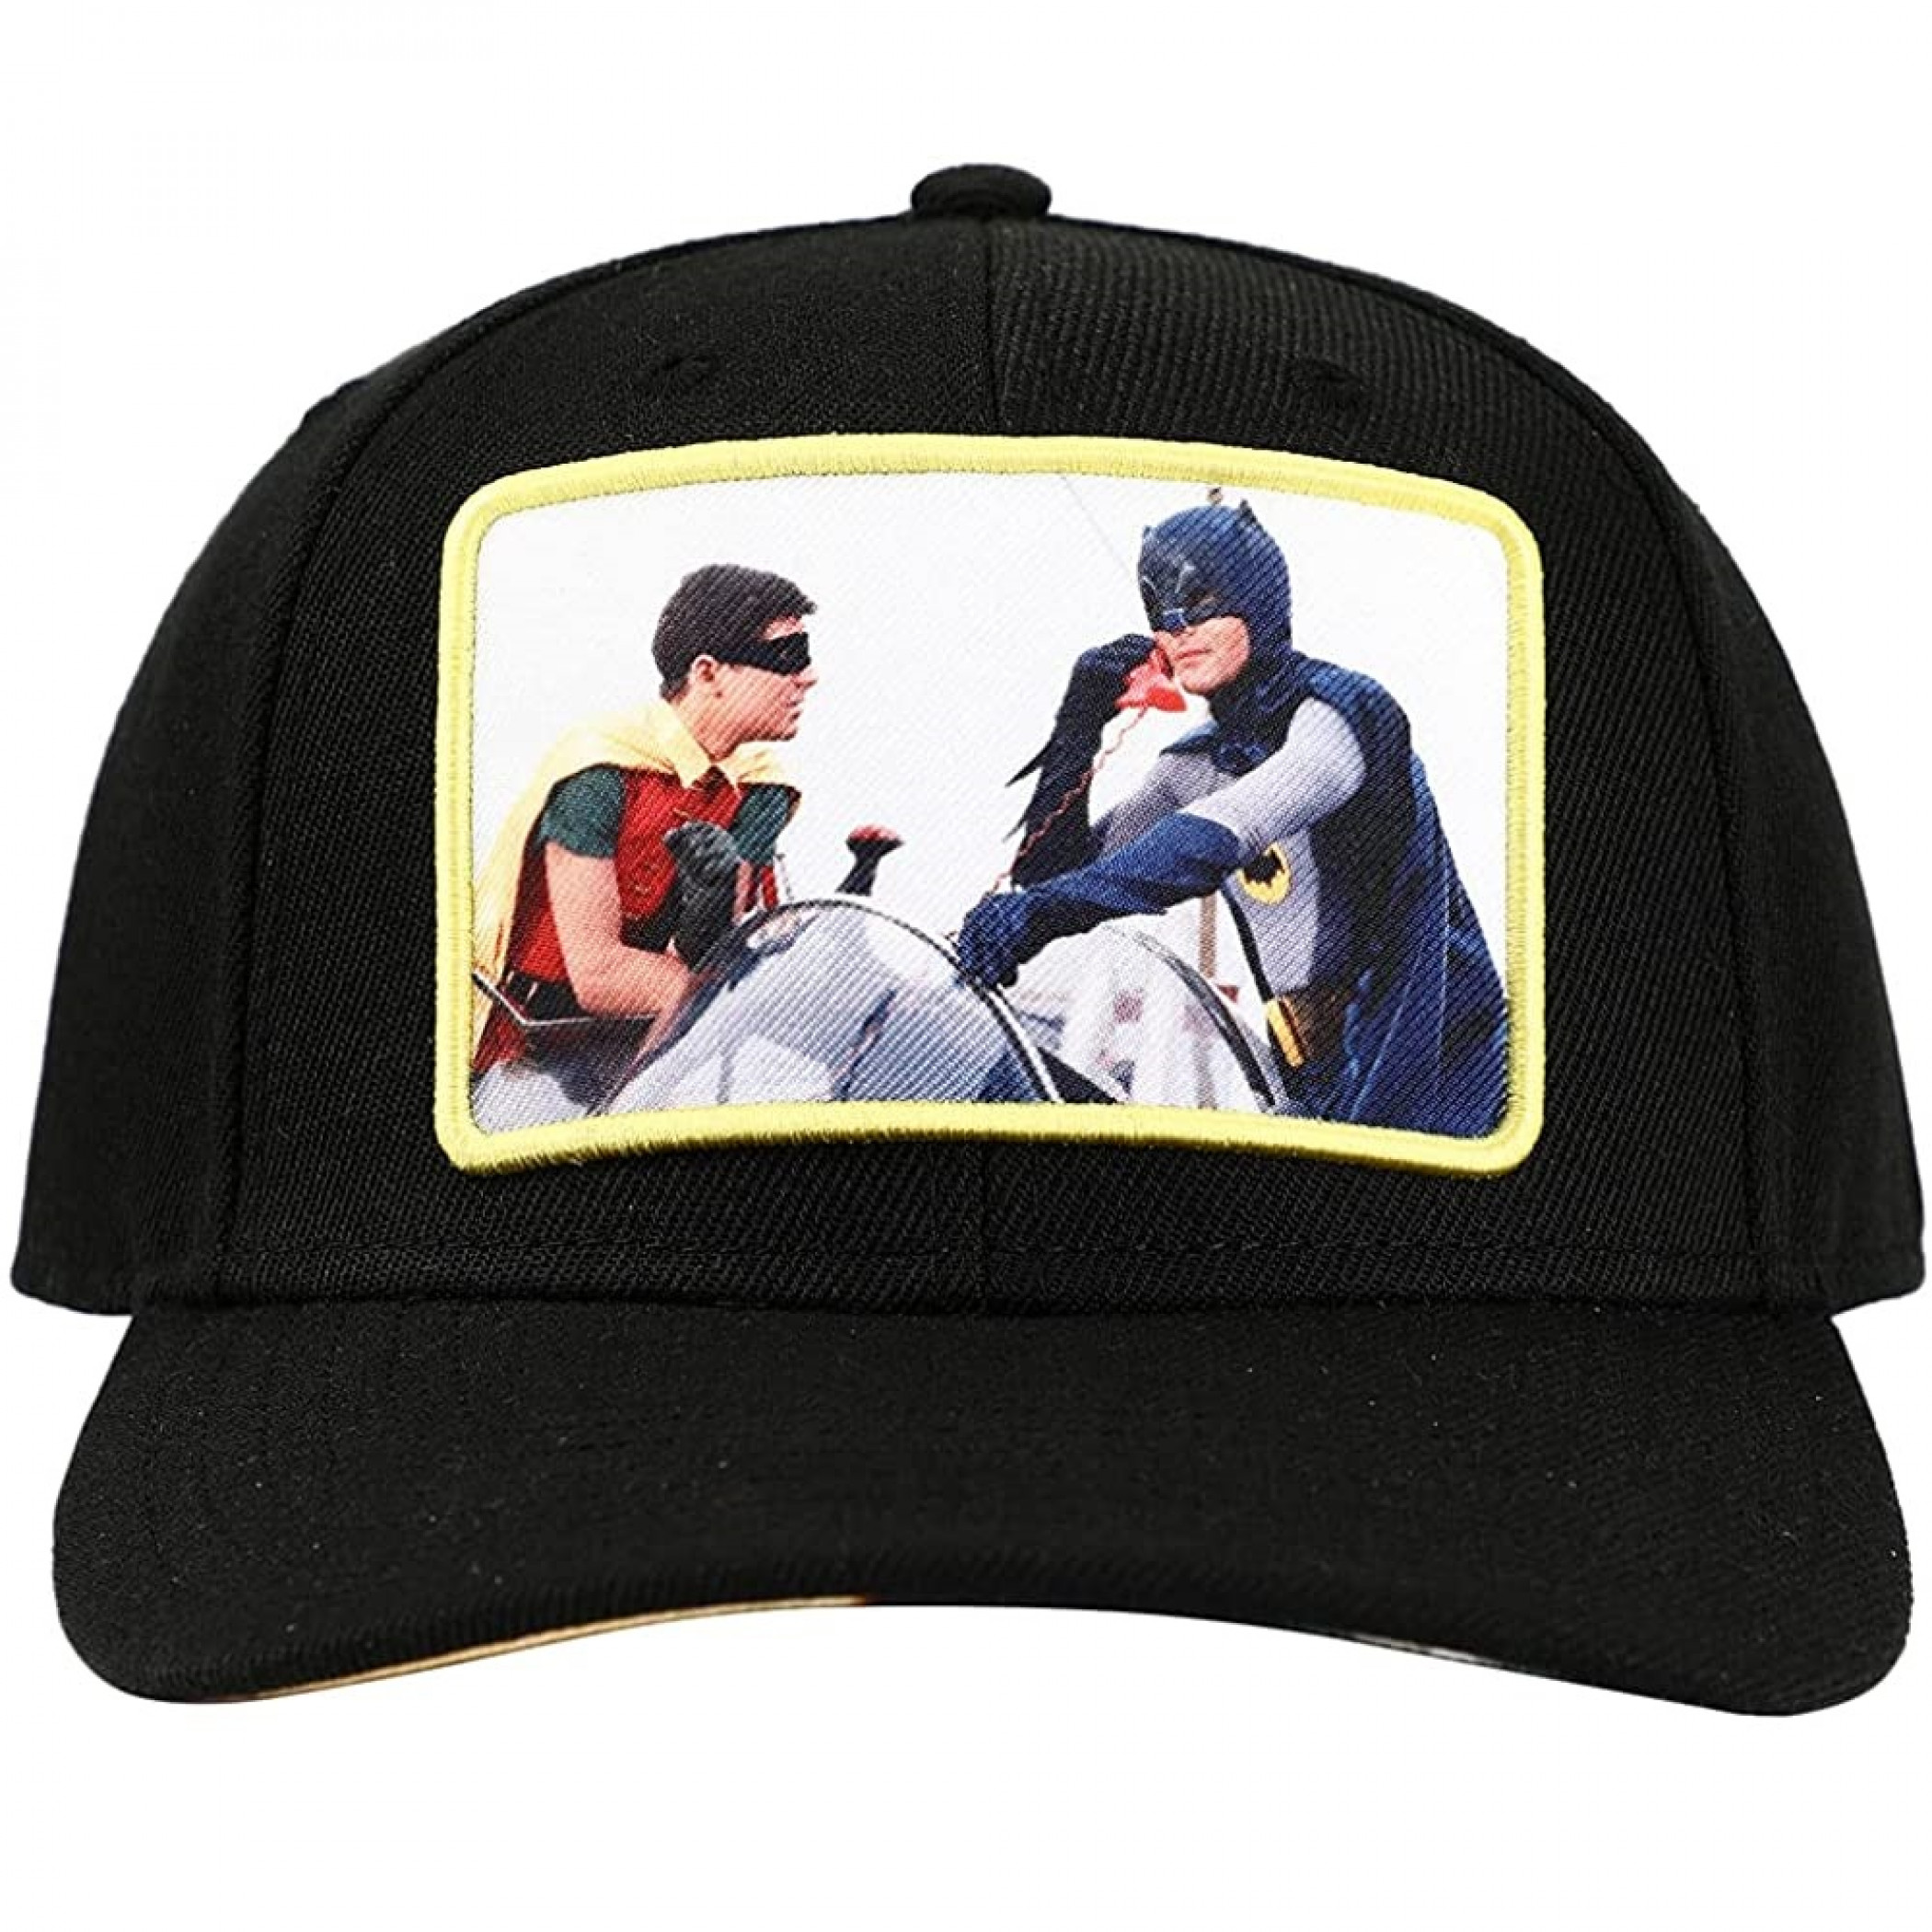 DC Comics Batman 1960's Batman & Robin Bat Phone Image Snapback Hat